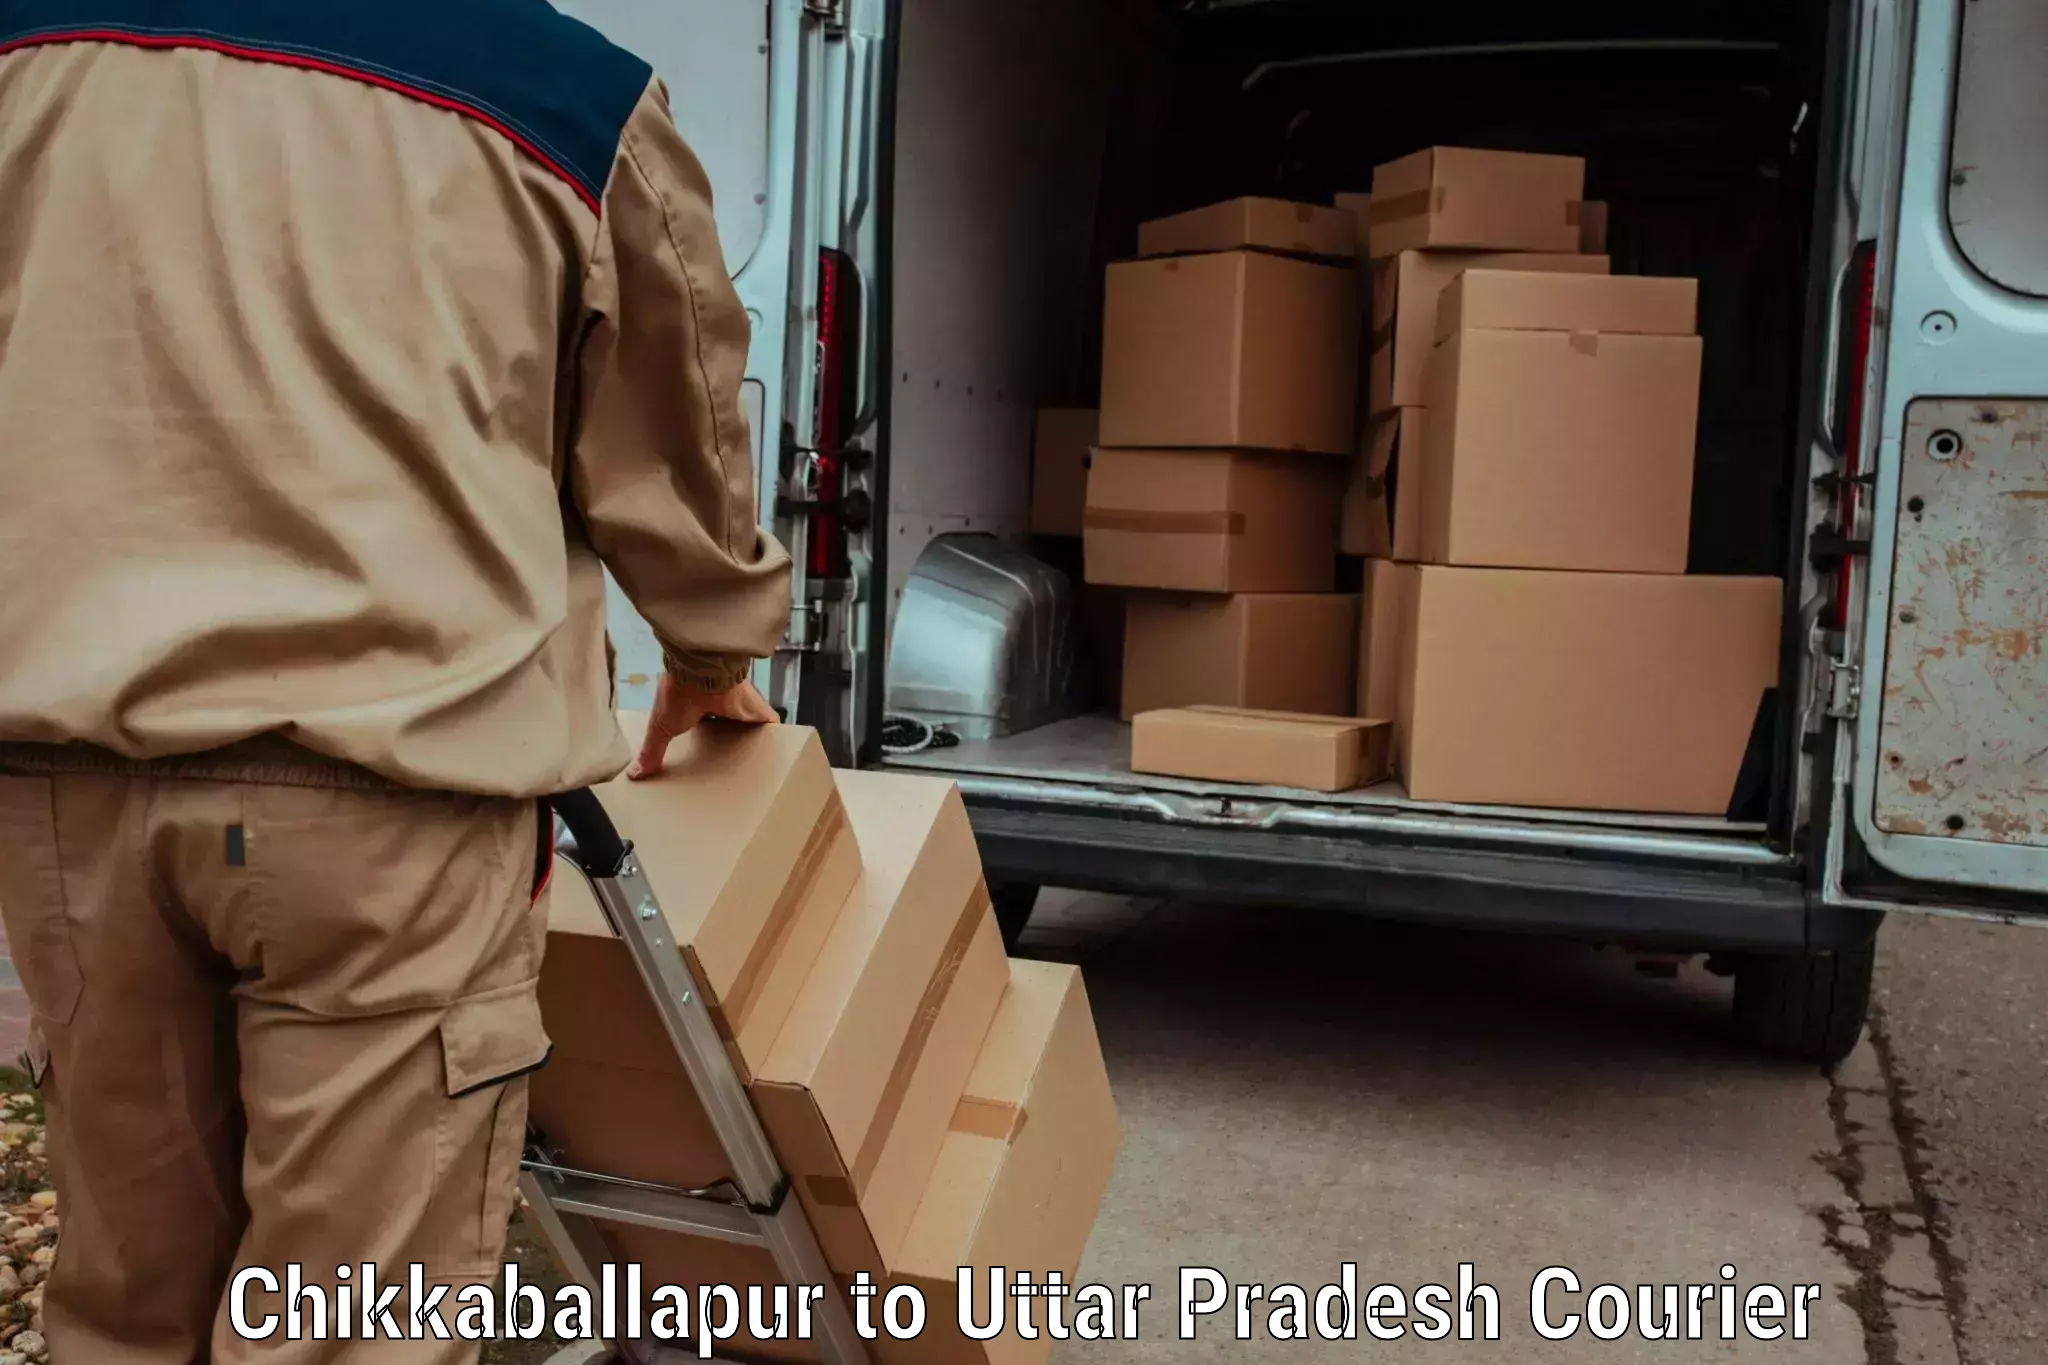 Baggage transport scheduler Chikkaballapur to Uttar Pradesh